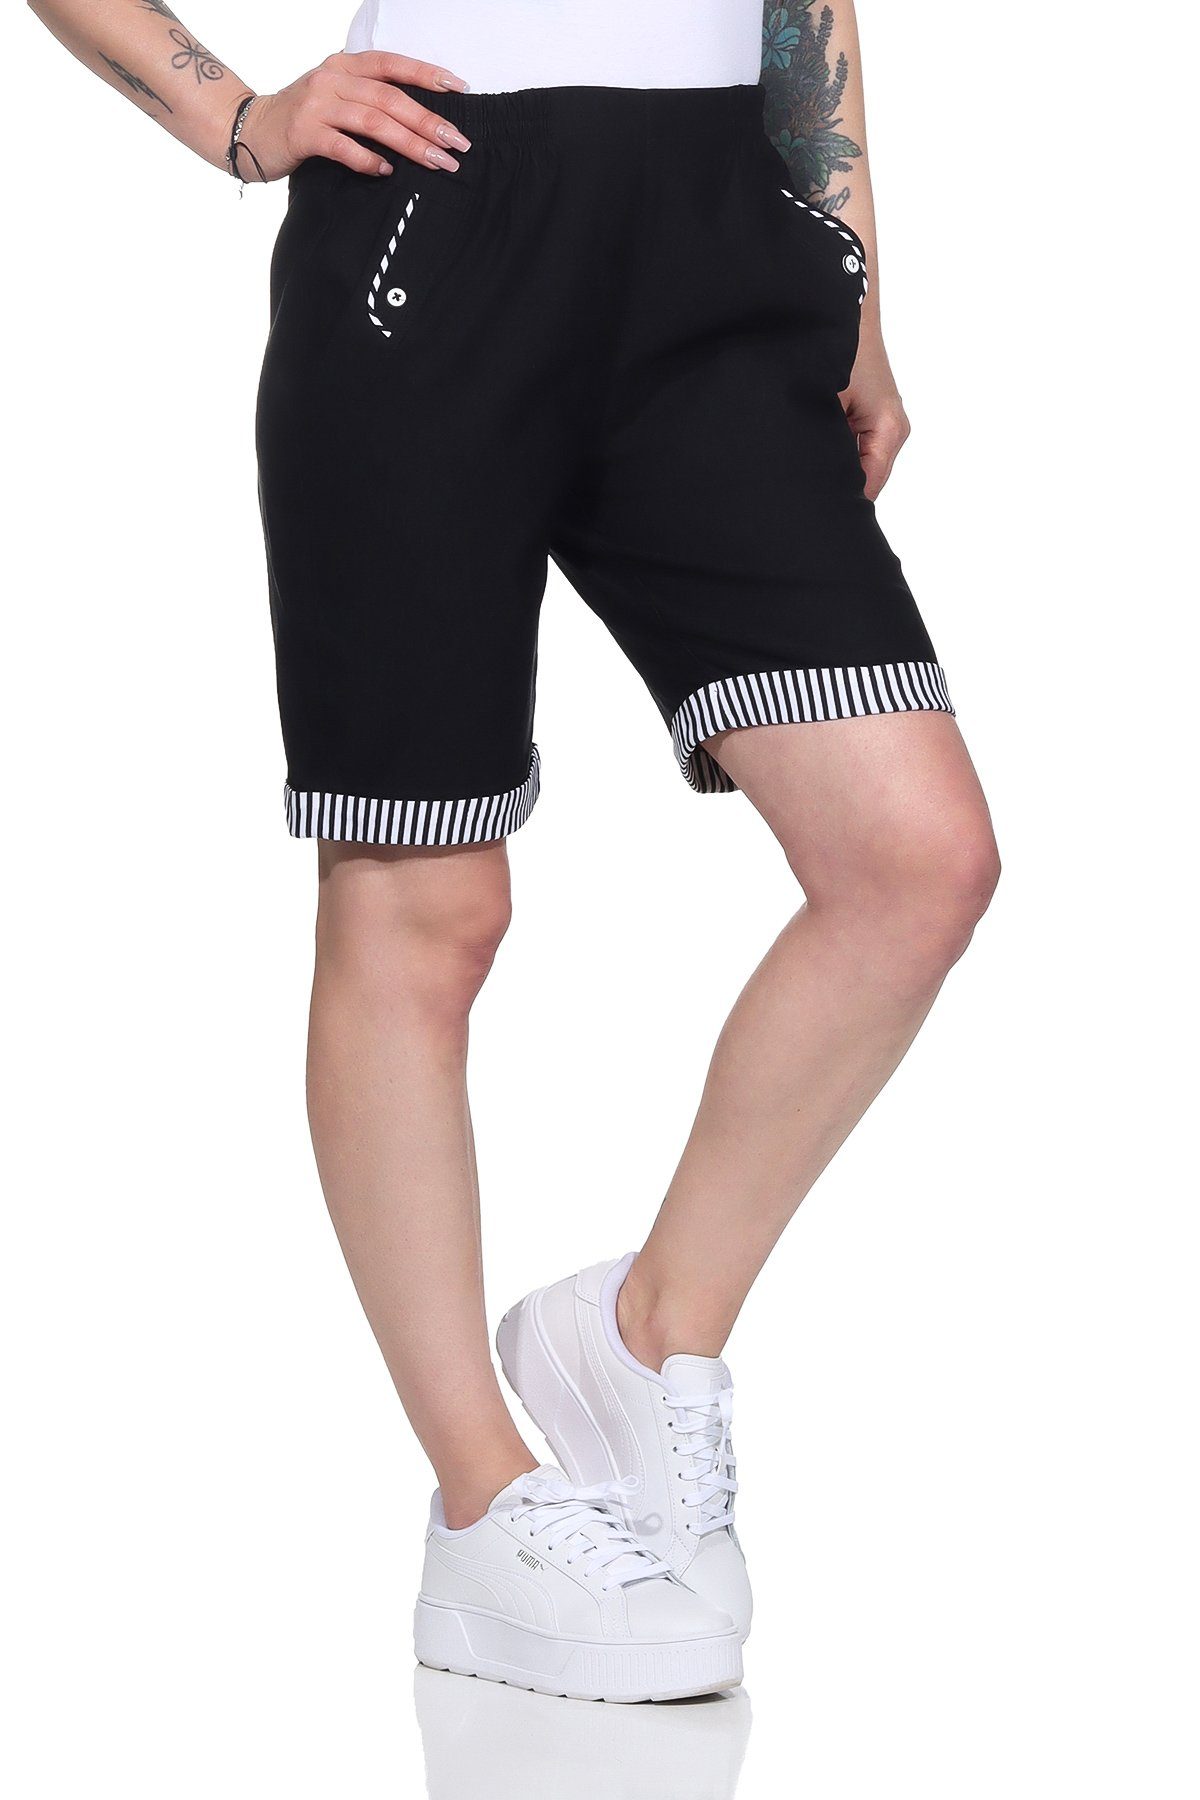 Aurela Damenmode Shorts Bermuda Maritime Damen Sommer Shorts Strandbermuda auch in großen Größen erhältlich, mit elastischem Bund, mit maritimen Details Schwarz